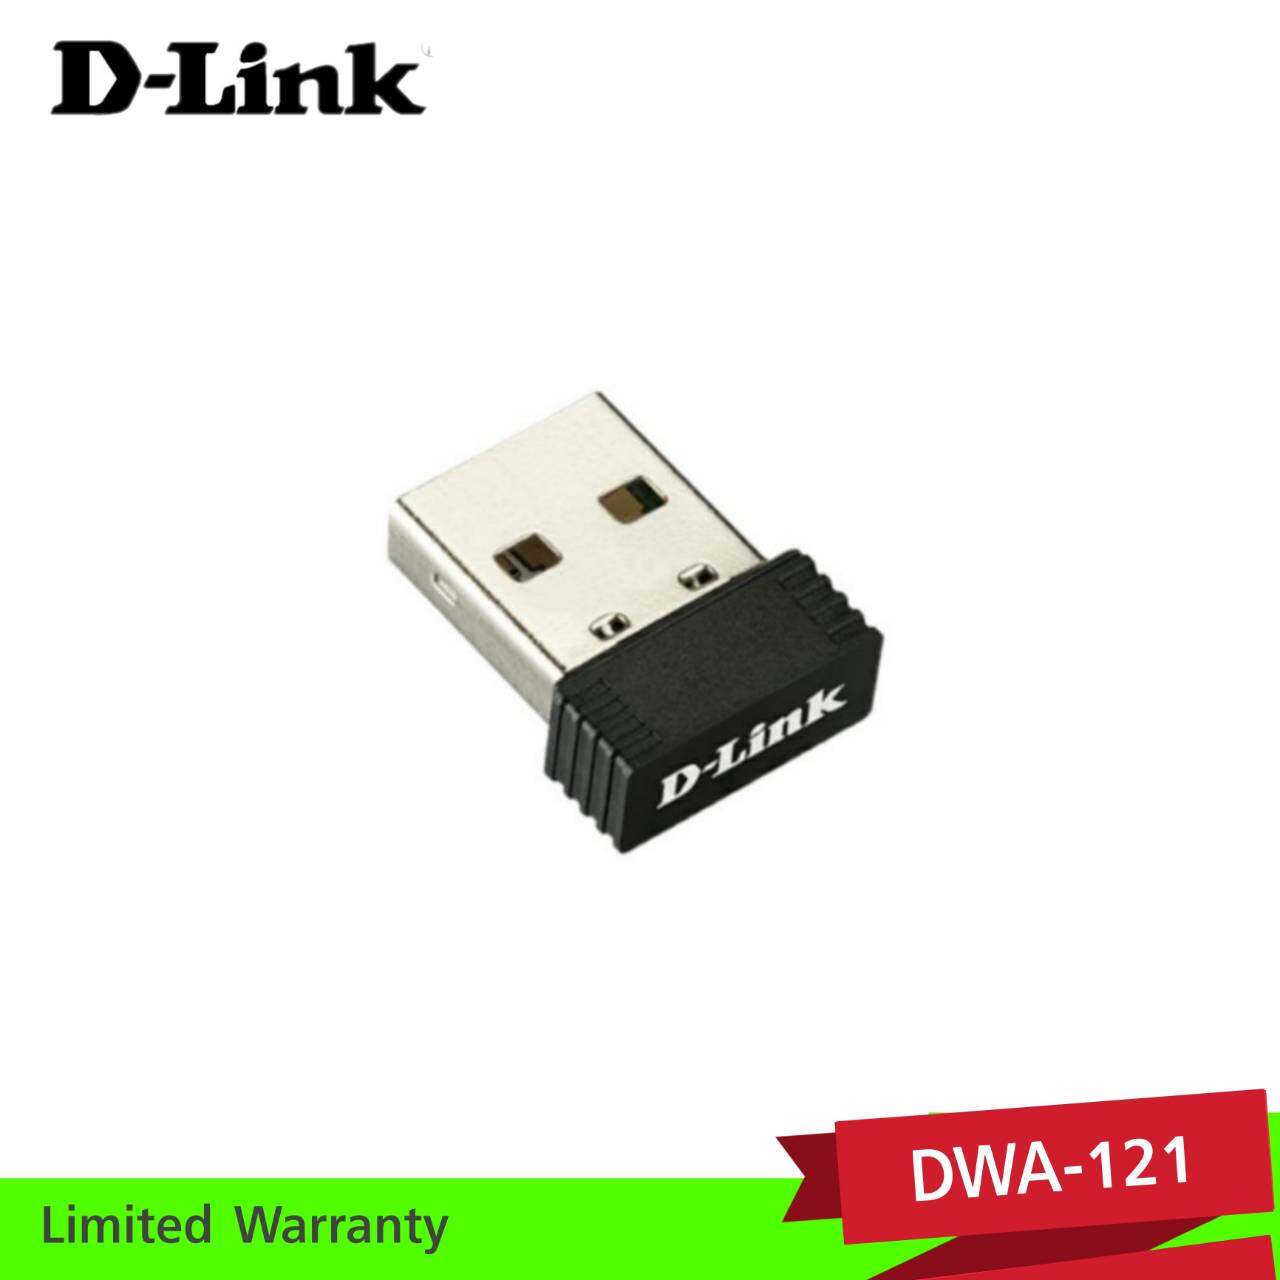 D-Link Usb Wireless Adapter N150(dwa-121). 